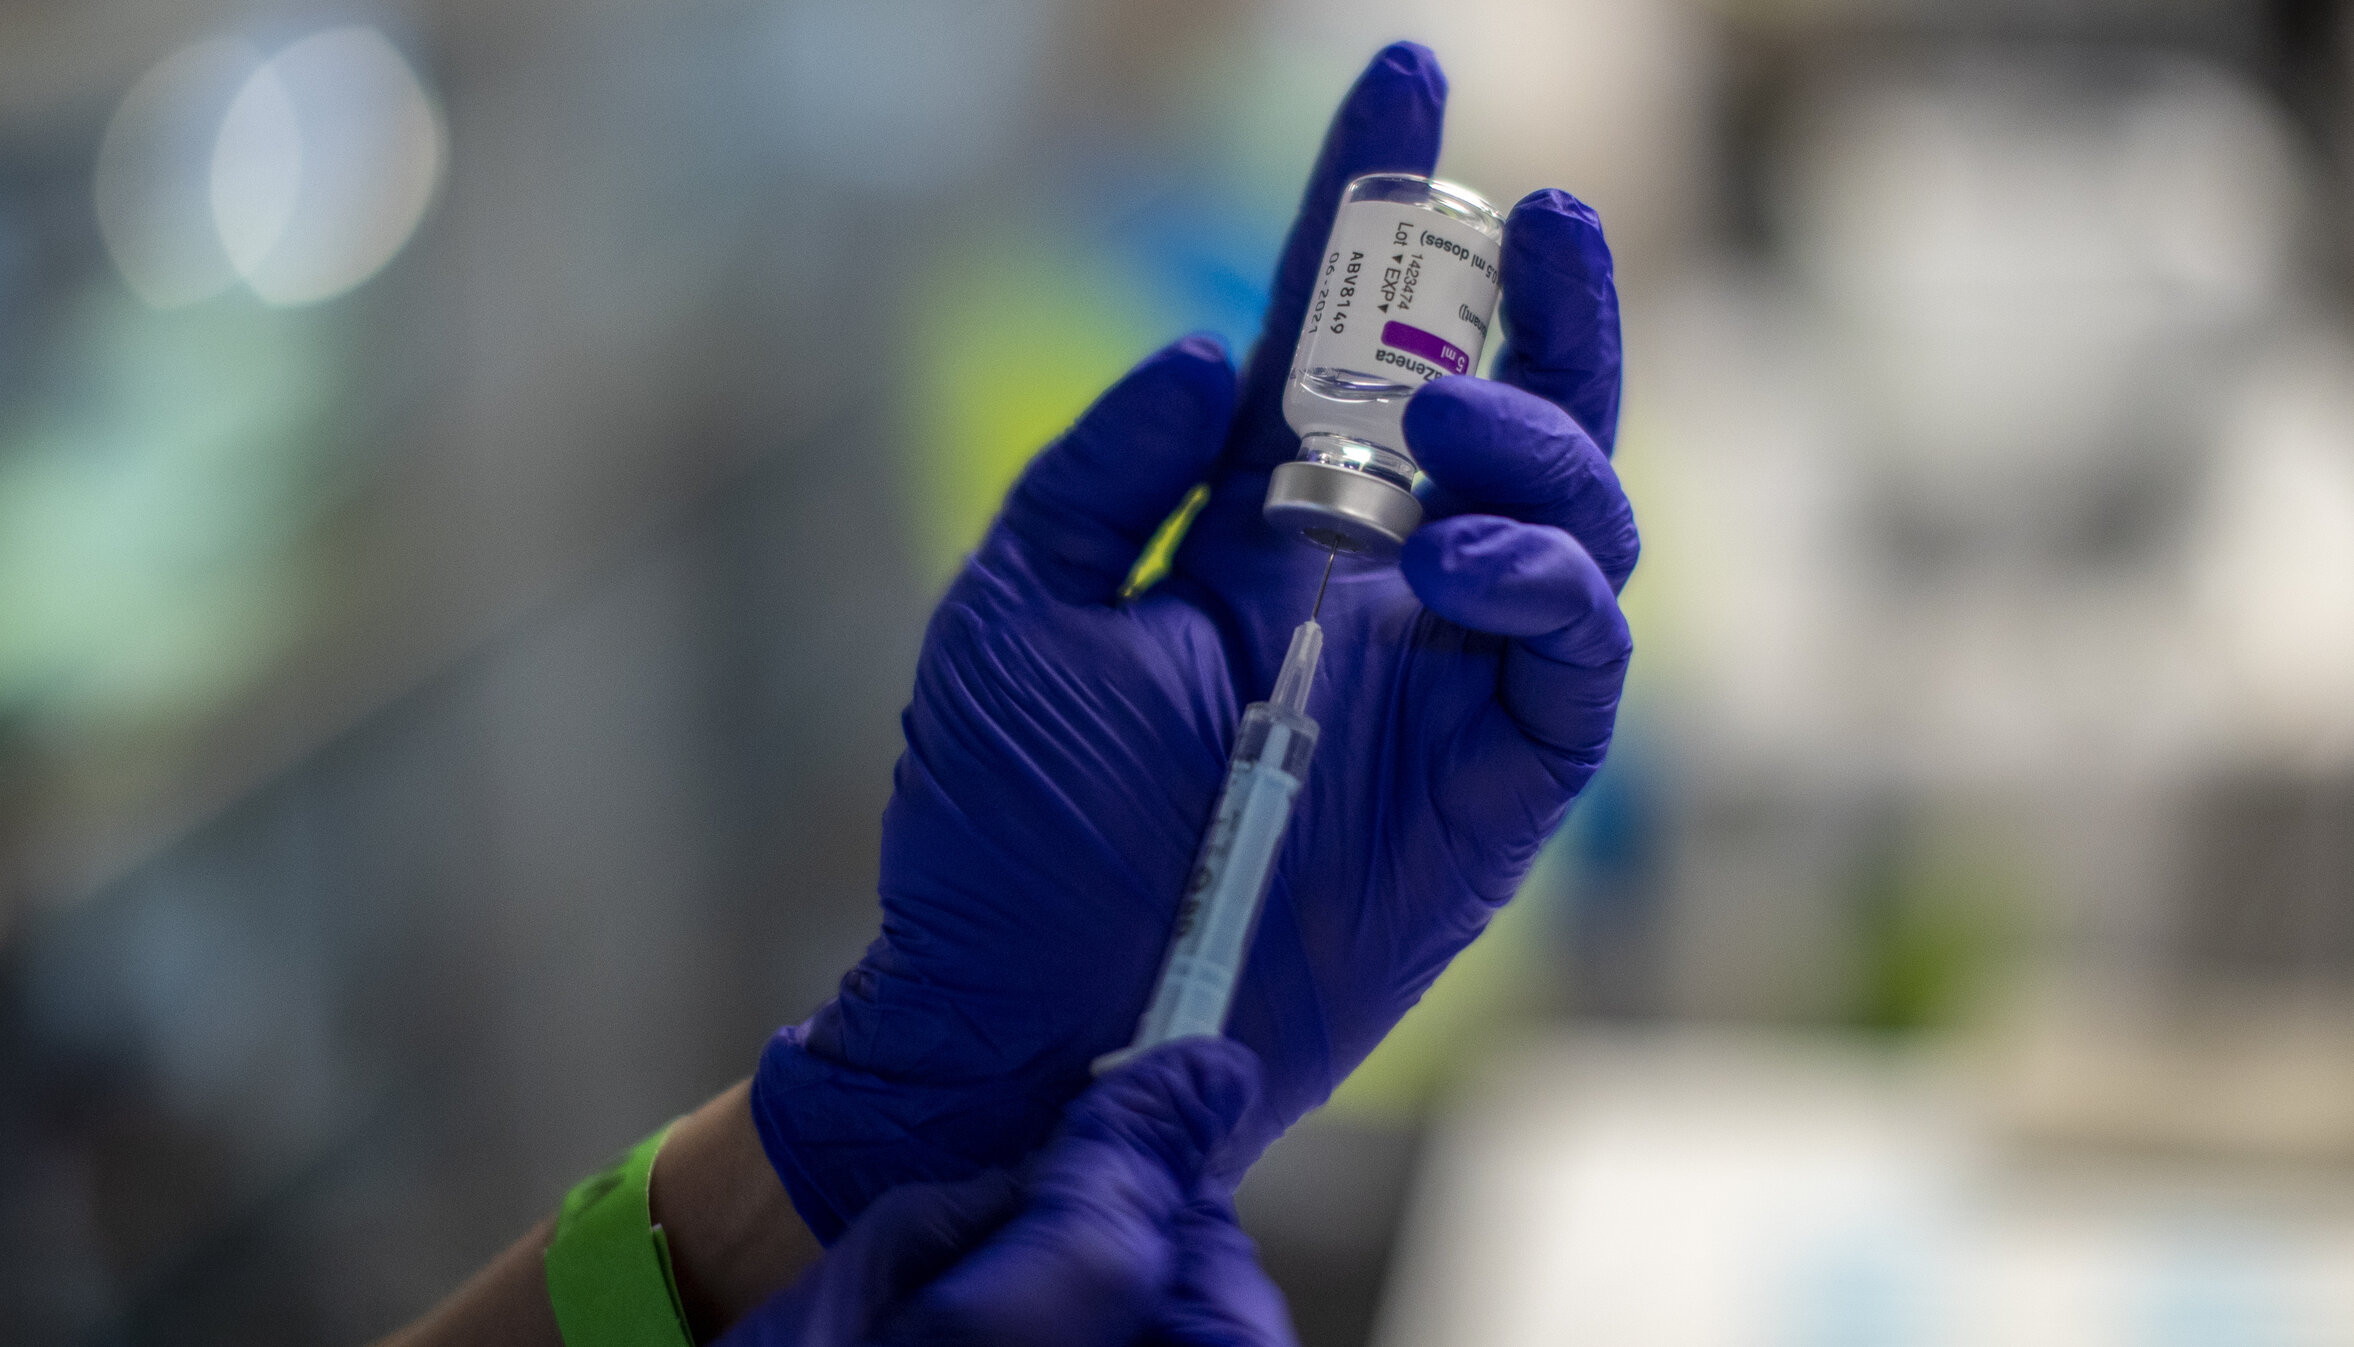 „Vaccinul AstraZeneca este deja mort”, indiferent de deciziile guvernelor sau autoritățile sanitare, spune președintele Societății Franceze de Medicină Generală